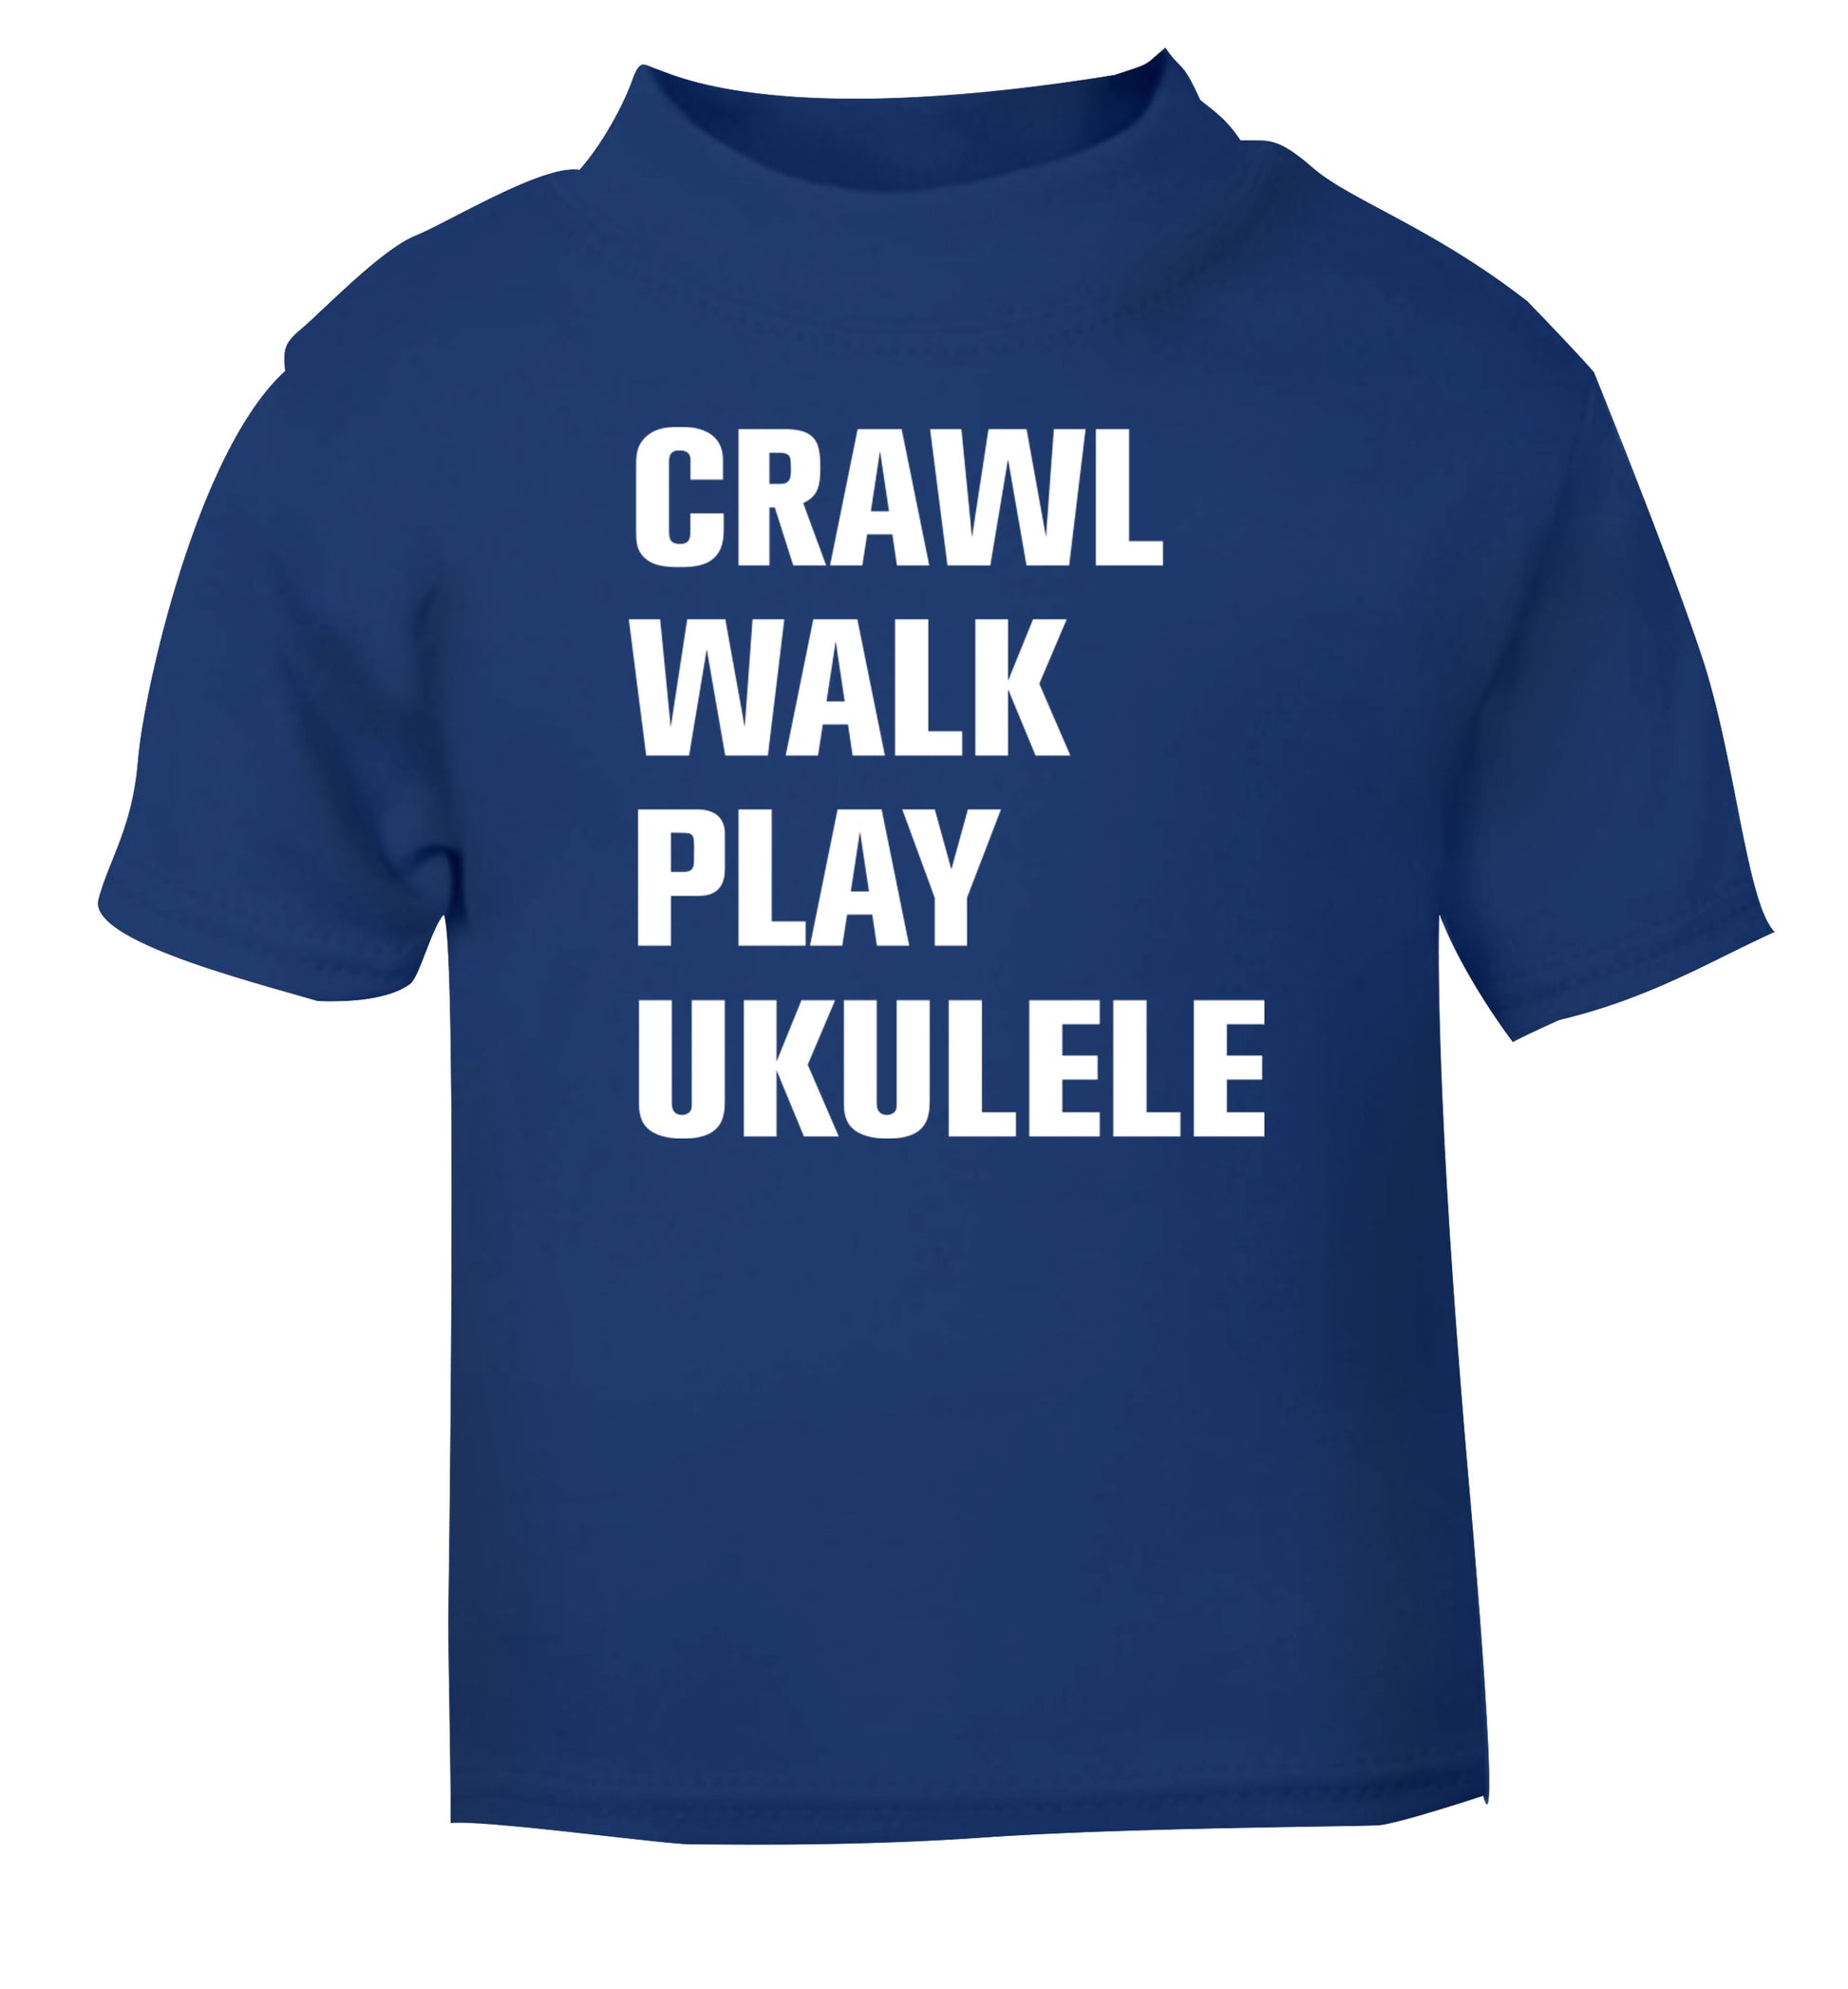 Crawl walk play ukulele blue Baby Toddler Tshirt 2 Years